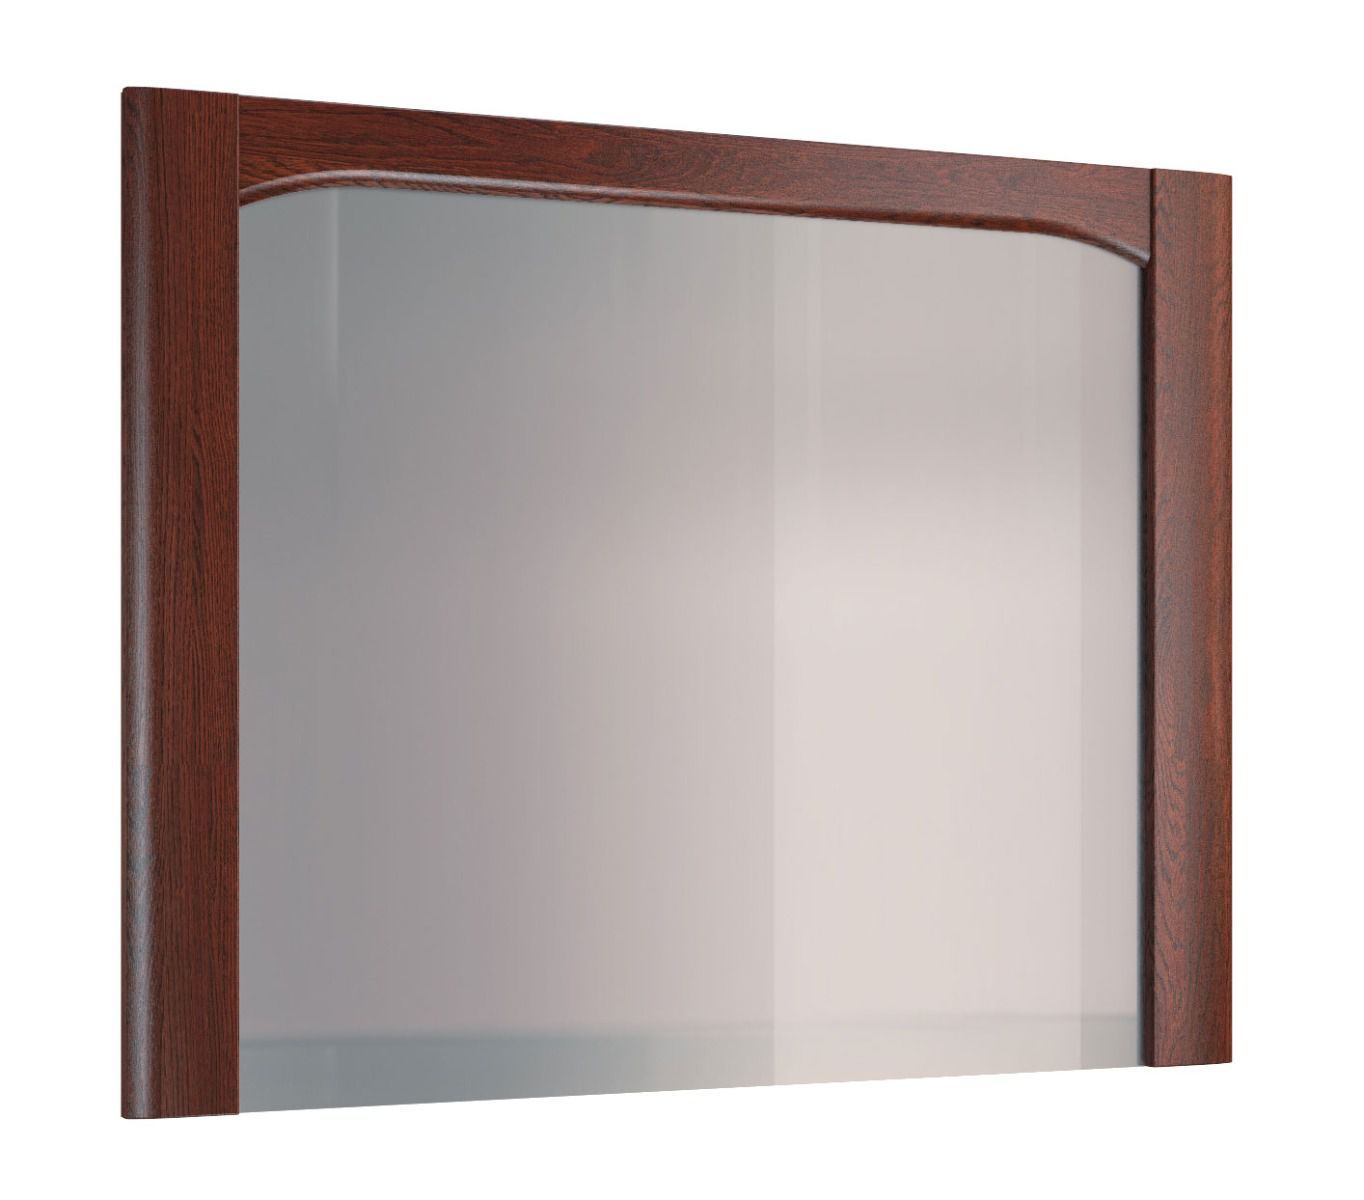 Grande specchio con cornice in legno Krasno 19, rovere massiccio, dimensioni: 90 x 115 x 4 cm, lavorazione di alta qualità, stile senza tempo